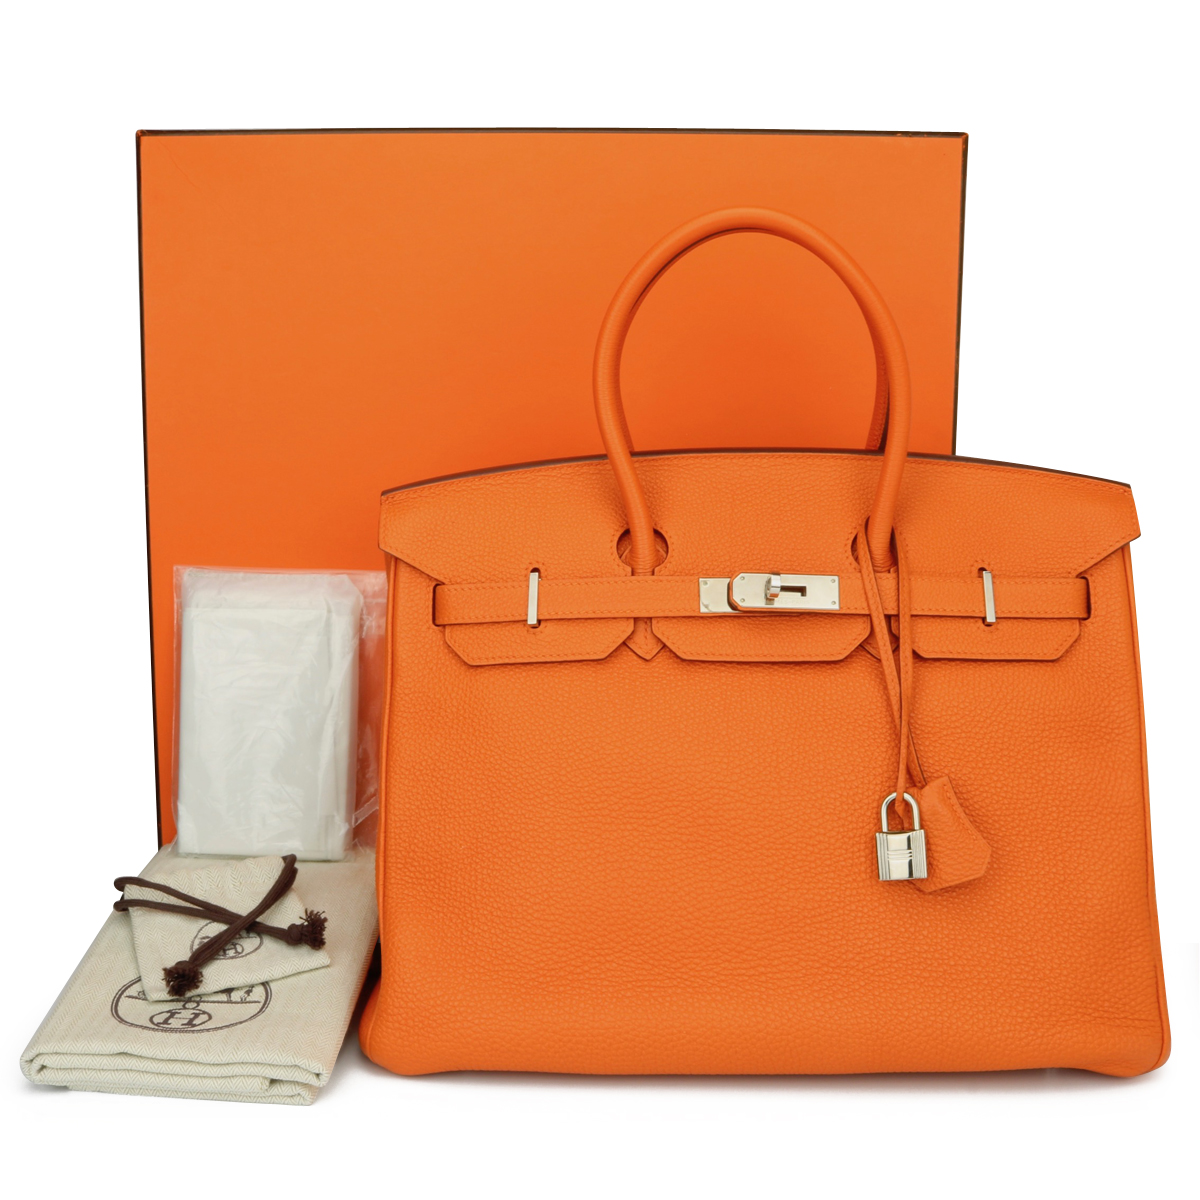 🎃 Hermès 25cm Birkin Orange Minium Togo Leather Palladium Hardware  #priveporter #hermes #birkin #birkin25 #orangeminium